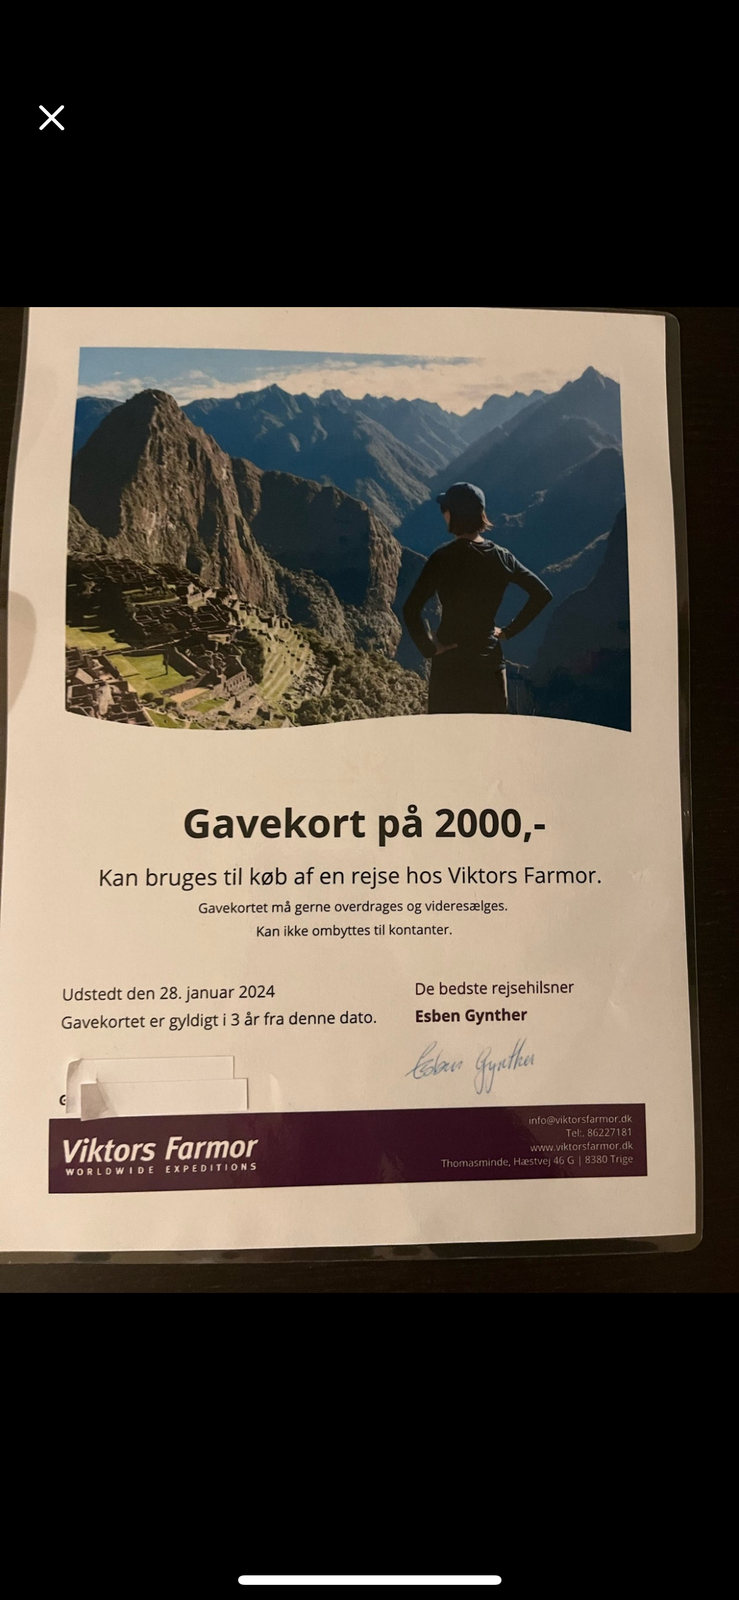 Viktors Farmor rejser Gavekort på 2000 kr

SÆ...